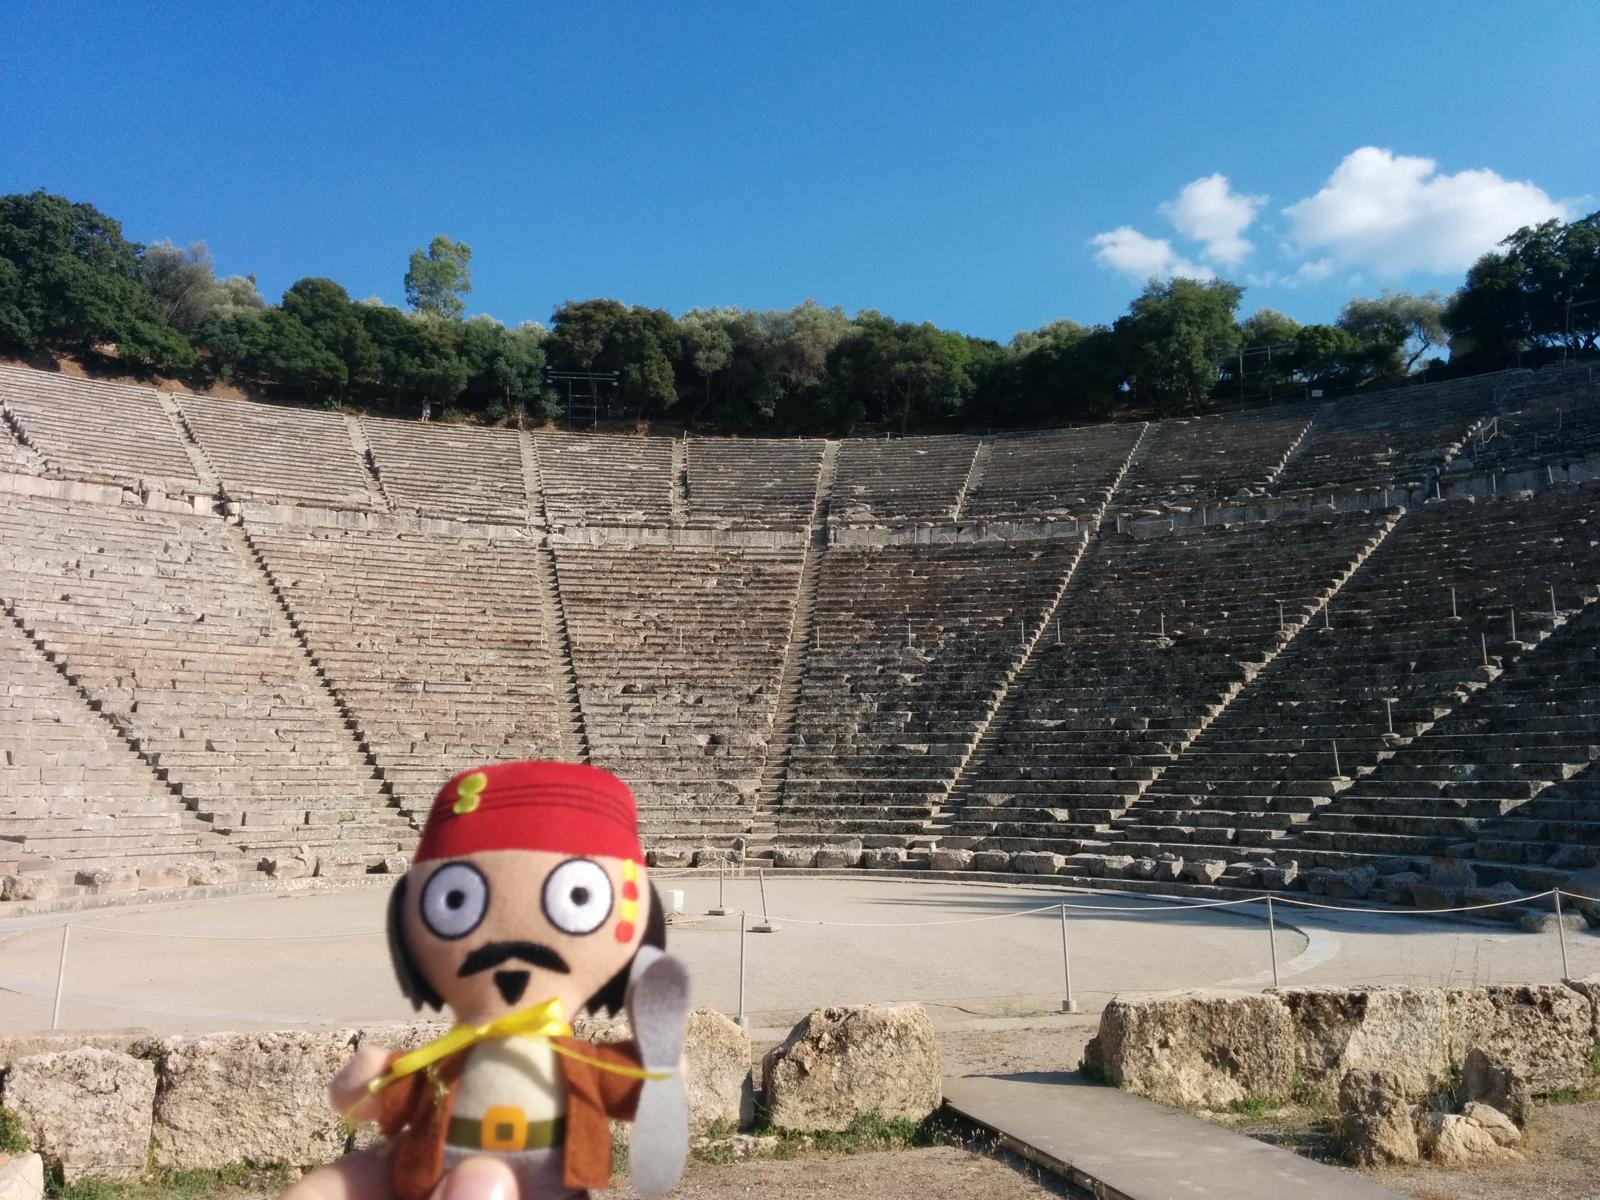 Jack at the Epidaurus Theatre